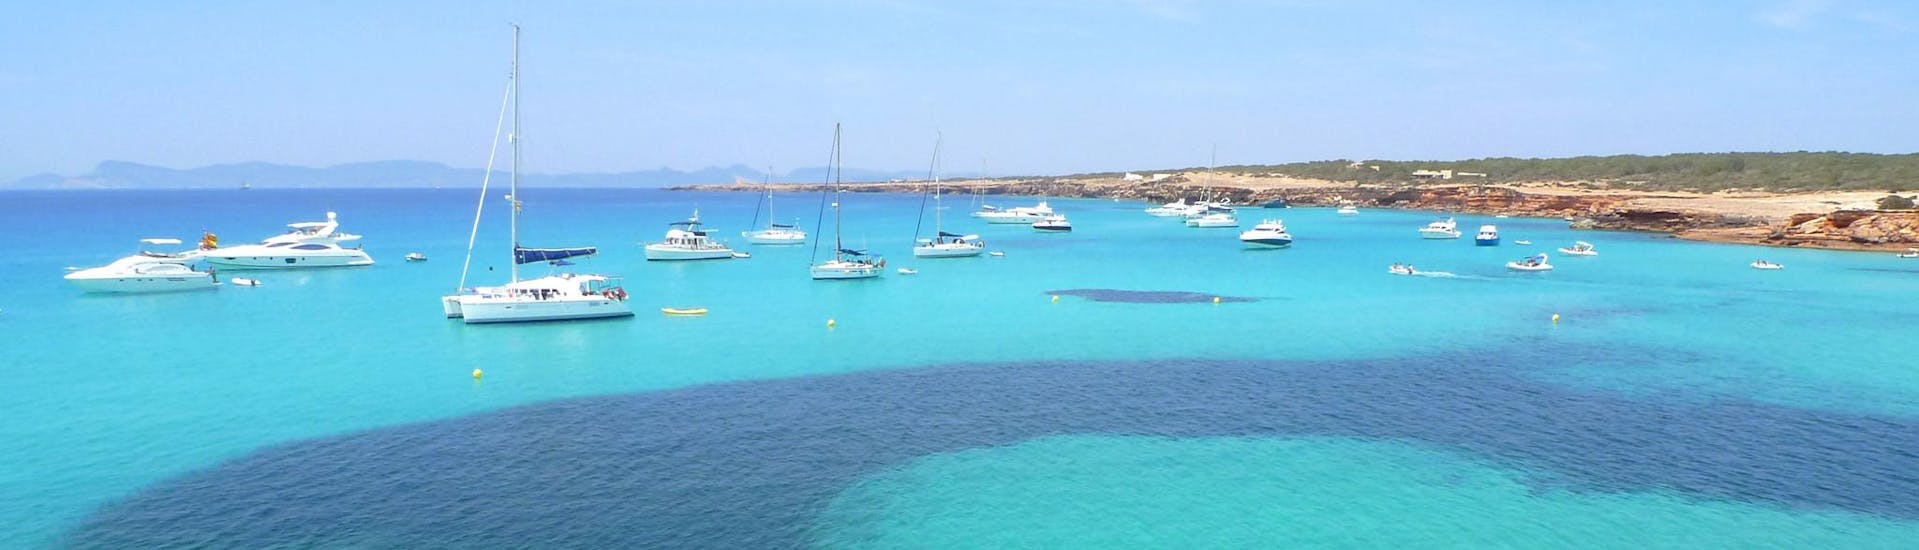 Diverse barche vicino alla costa durante una gita in barca a Formentera.